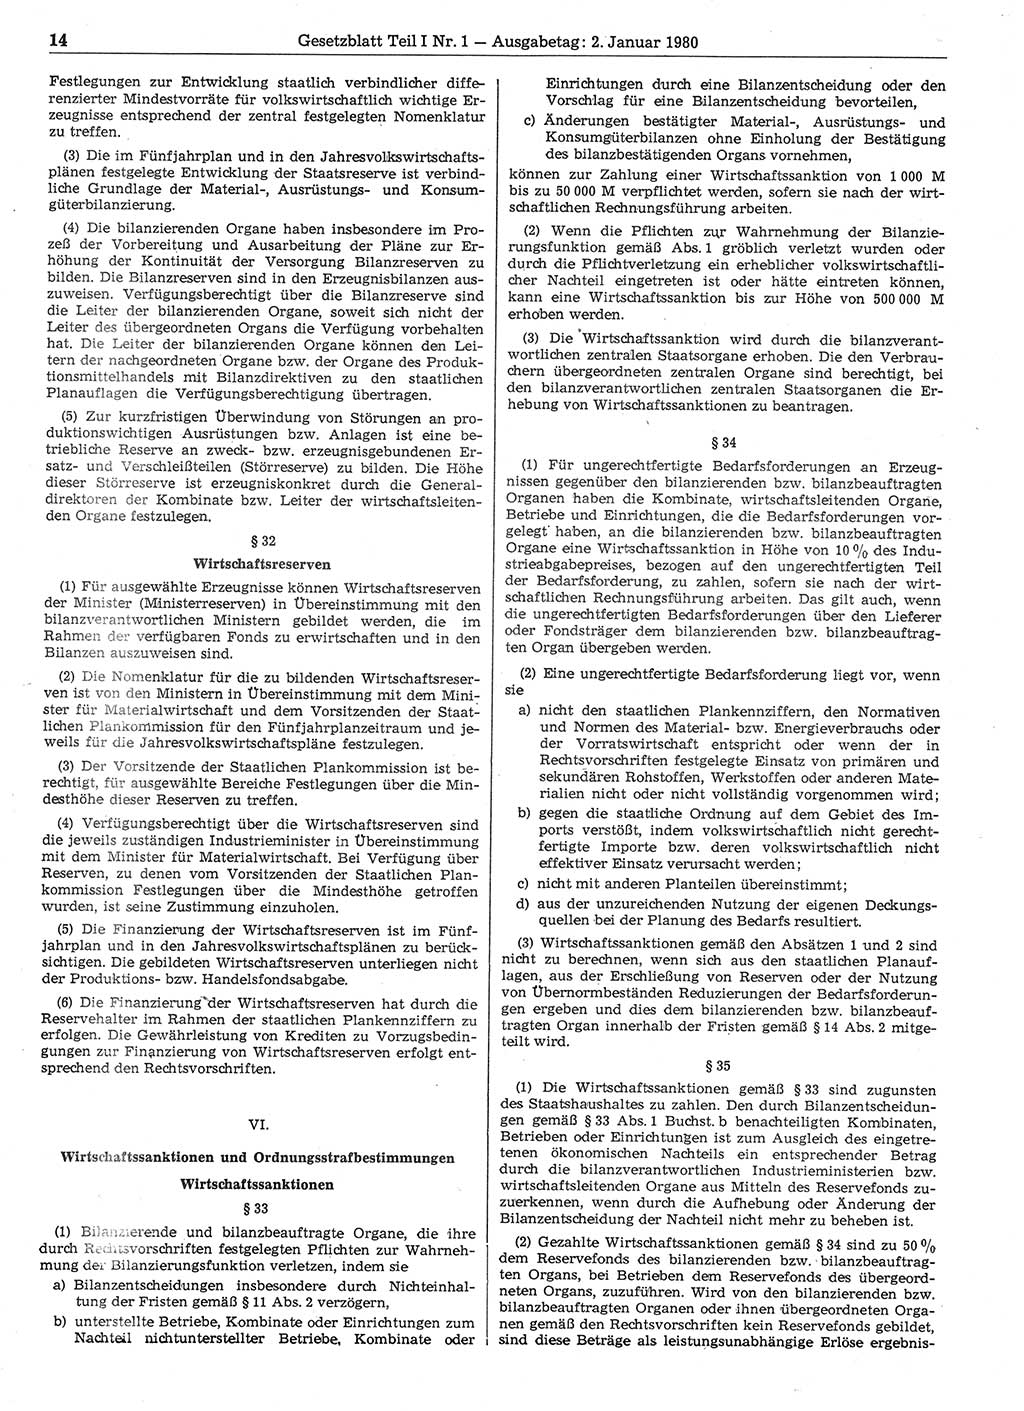 Gesetzblatt (GBl.) der Deutschen Demokratischen Republik (DDR) Teil Ⅰ 1980, Seite 14 (GBl. DDR Ⅰ 1980, S. 14)